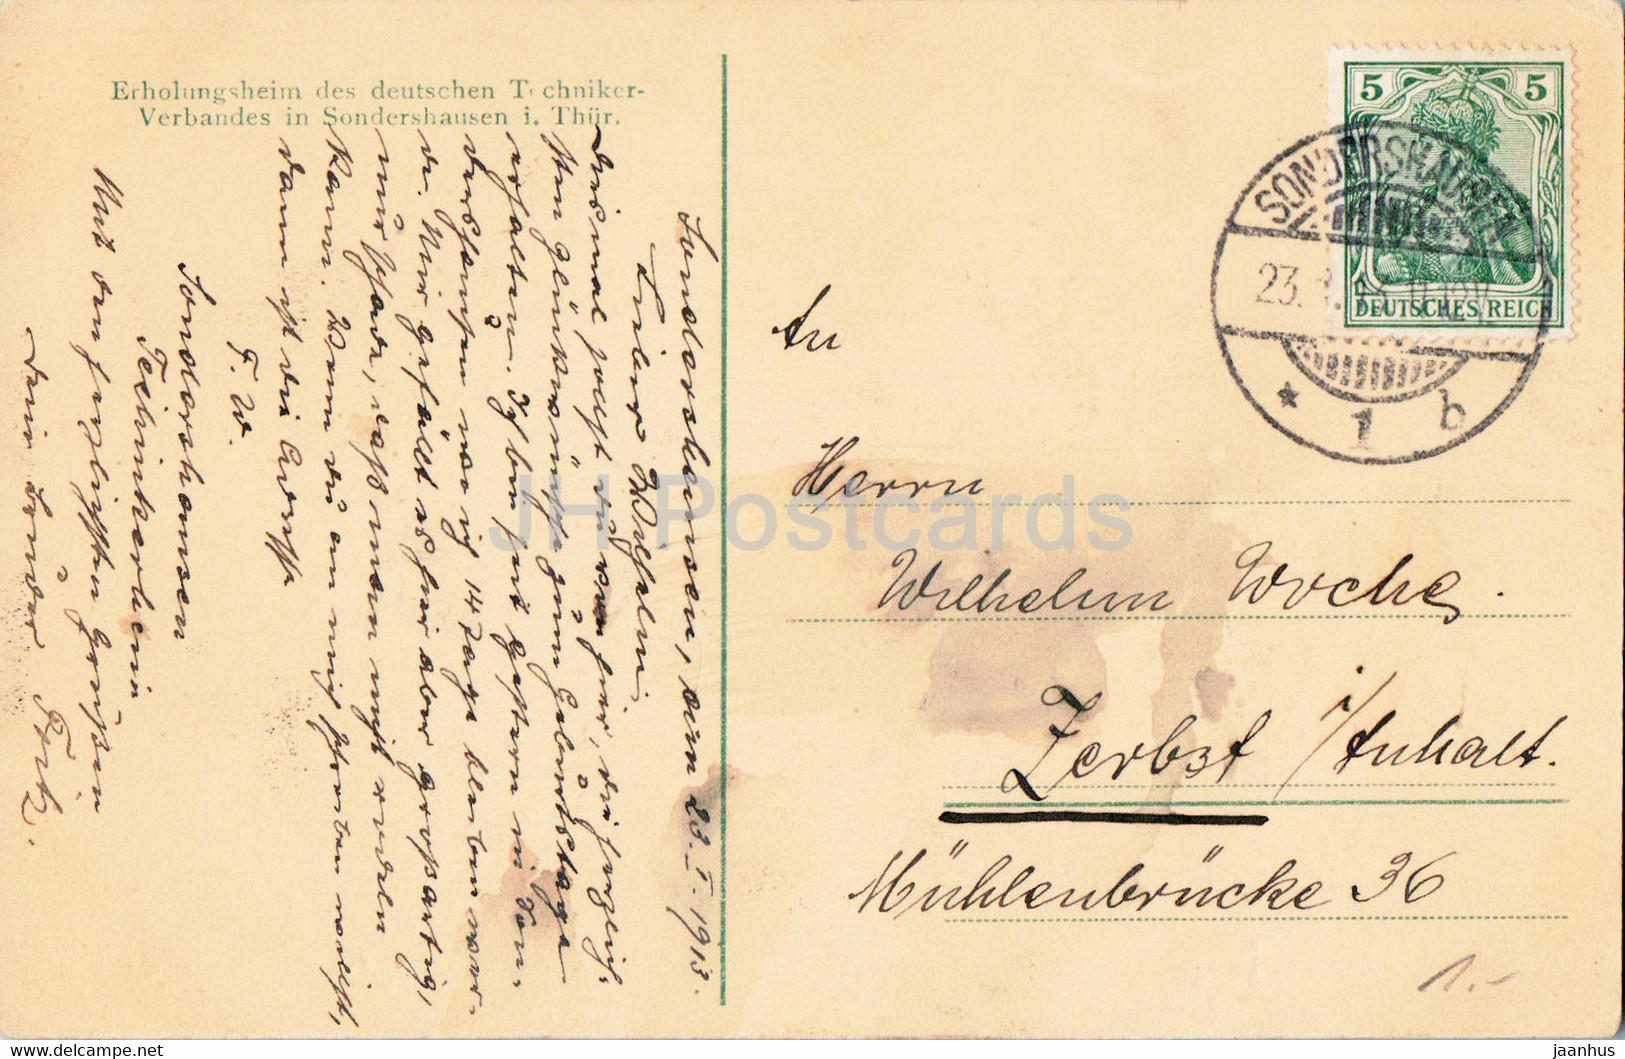 Schreib Lesezimmer - Sondershausen - Erholungsheim Des Techniker Verbandes - Old Postcard - 1913 - Germany - Used - Sondershausen